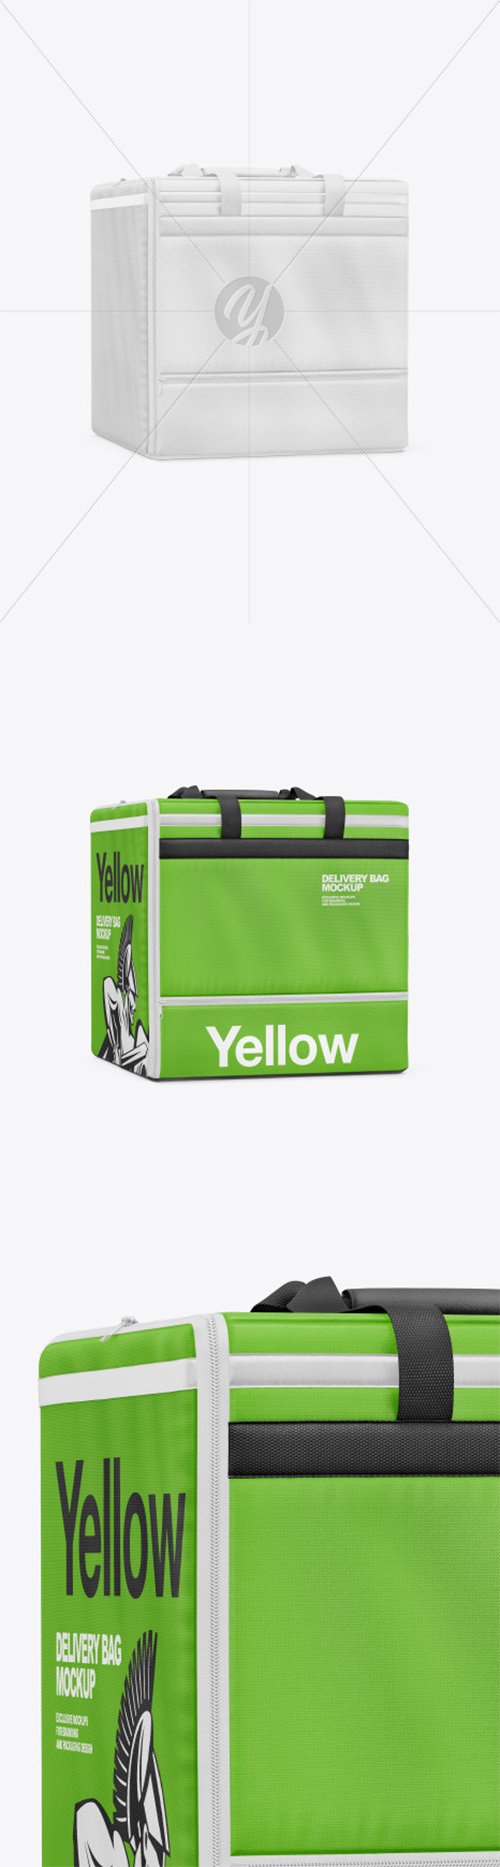 Download Polyester Delivery Bag Mockup 66146 TIF » NitroGFX ...